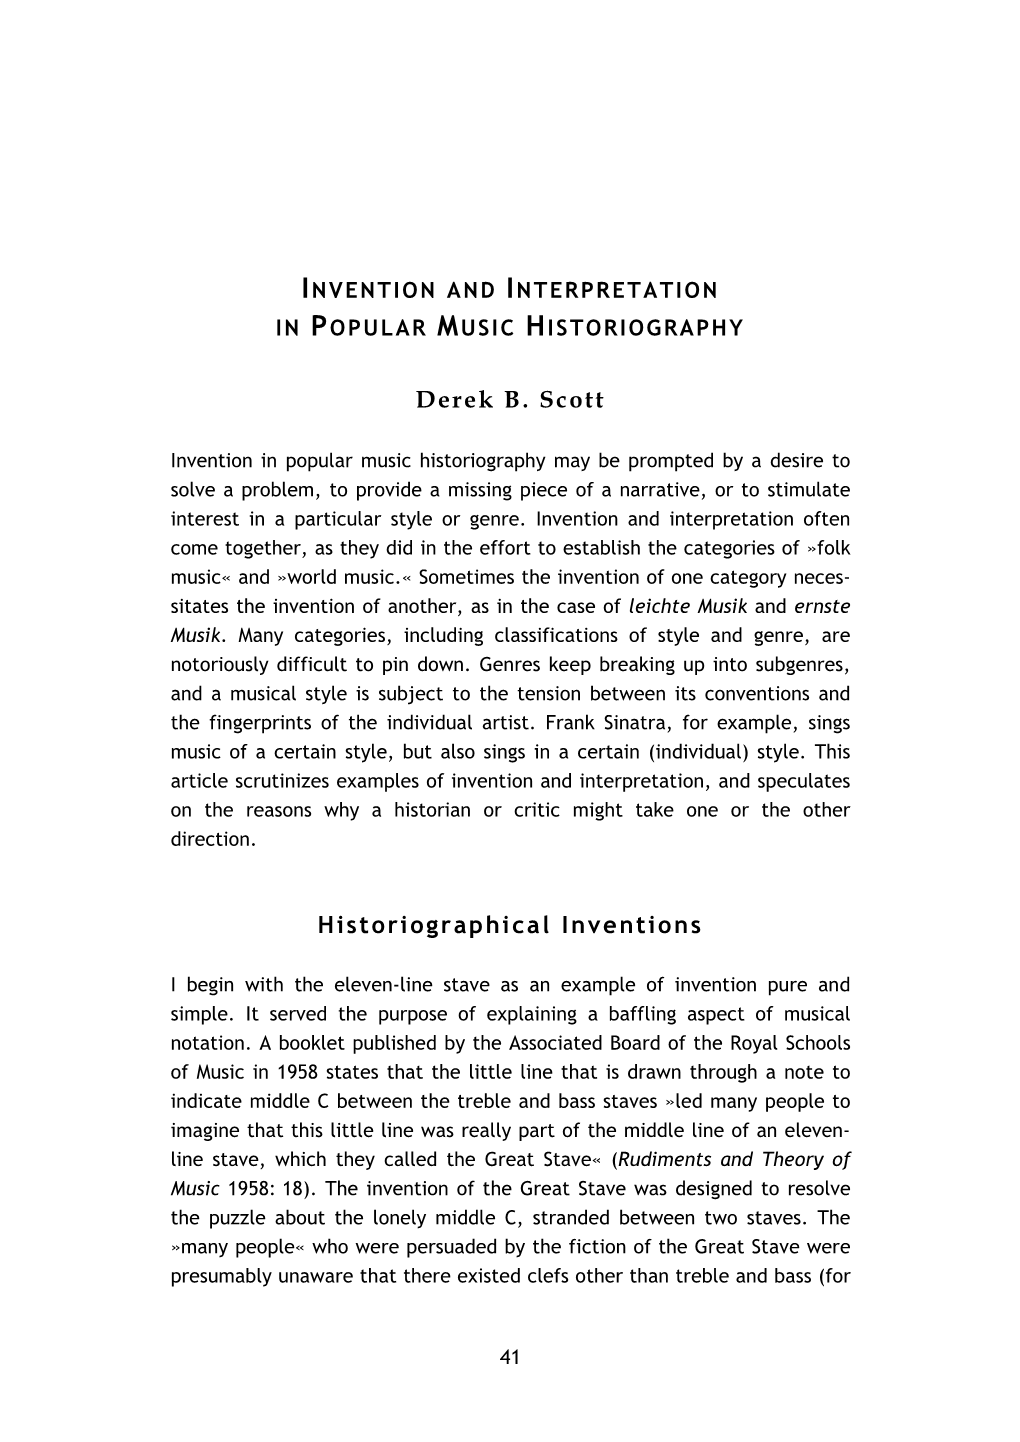 Popularmusikforschung40 04: Invention and Interpretation In